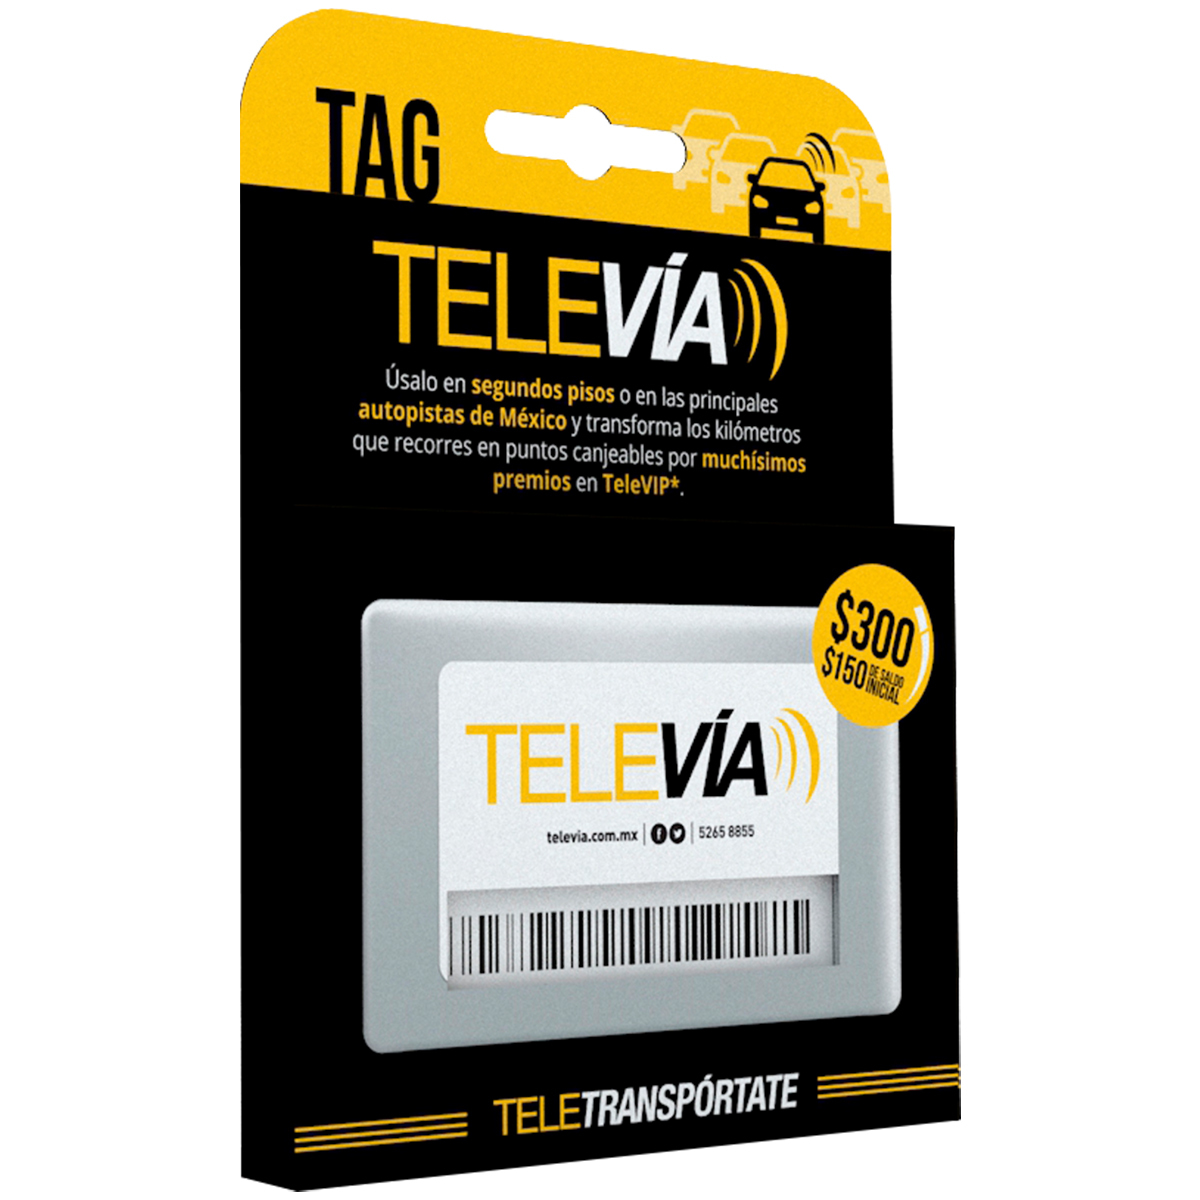 TAG TELEVIA (CLASICO, SALDO $150)